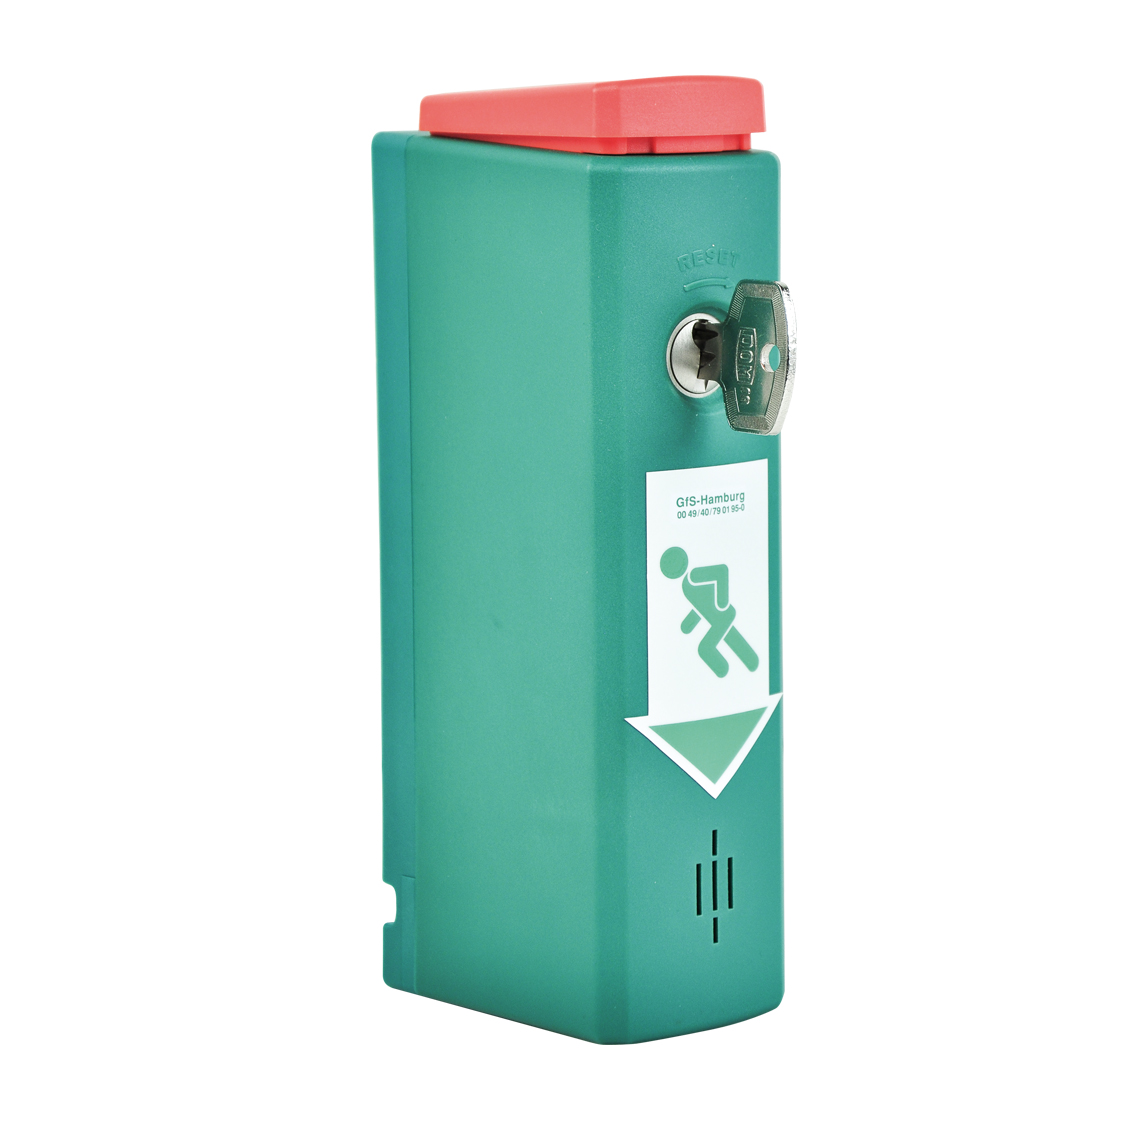 GfS Magnet EH-Türwächter® mit Voralarm grünes Kunststoffgehäuse